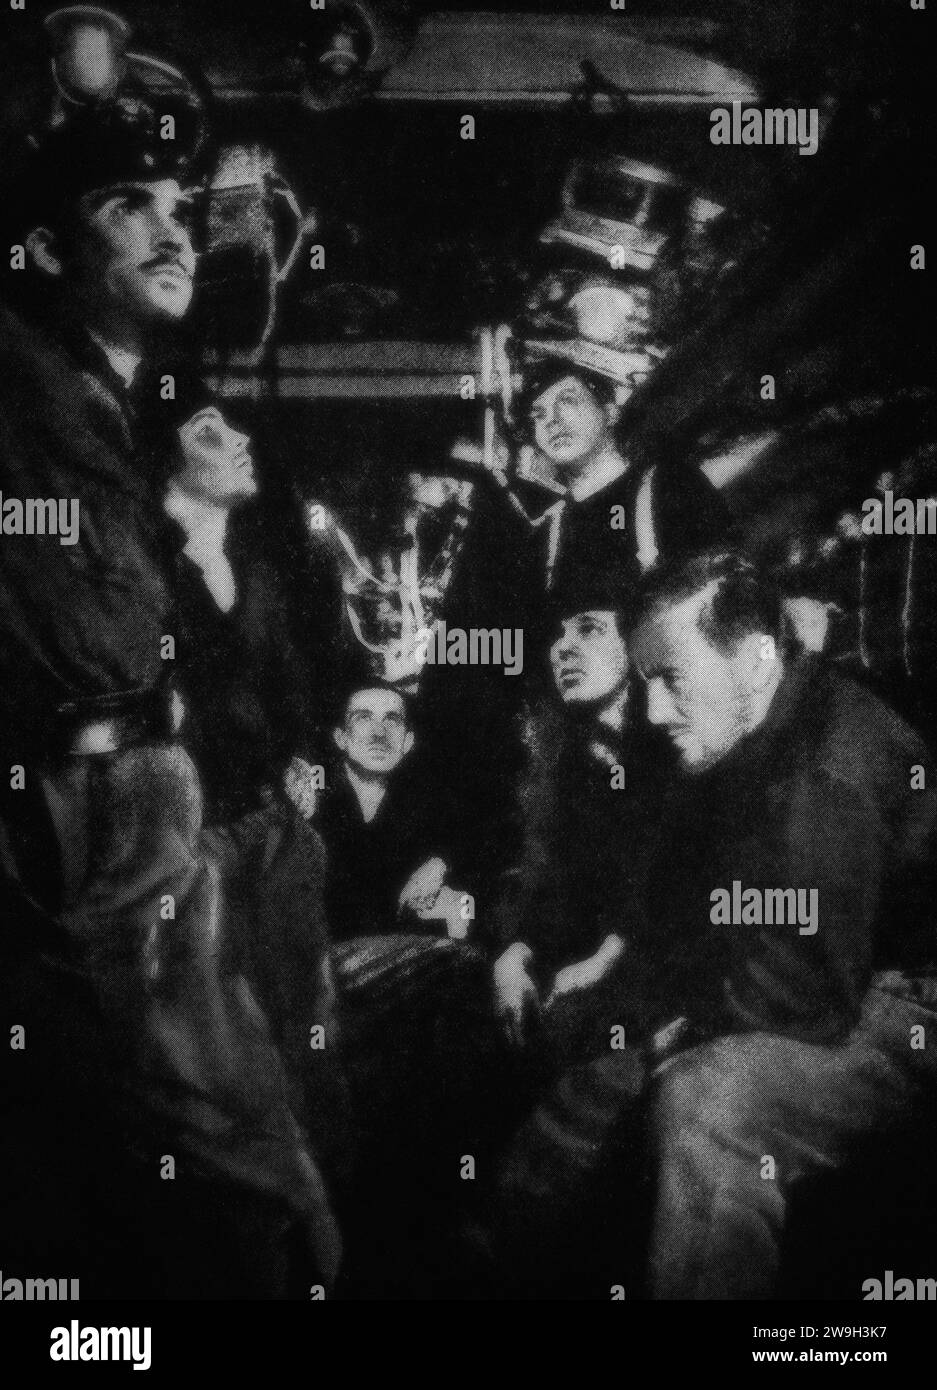 La preoccupazione sui volti di un equipaggio tedesco di U-Boat mentre attendevano cariche di profondità cadde da un cacciatorpediniere in servizio di scorta dei convogli atlantici nel febbraio 1943, durante la seconda guerra mondiale. Foto Stock